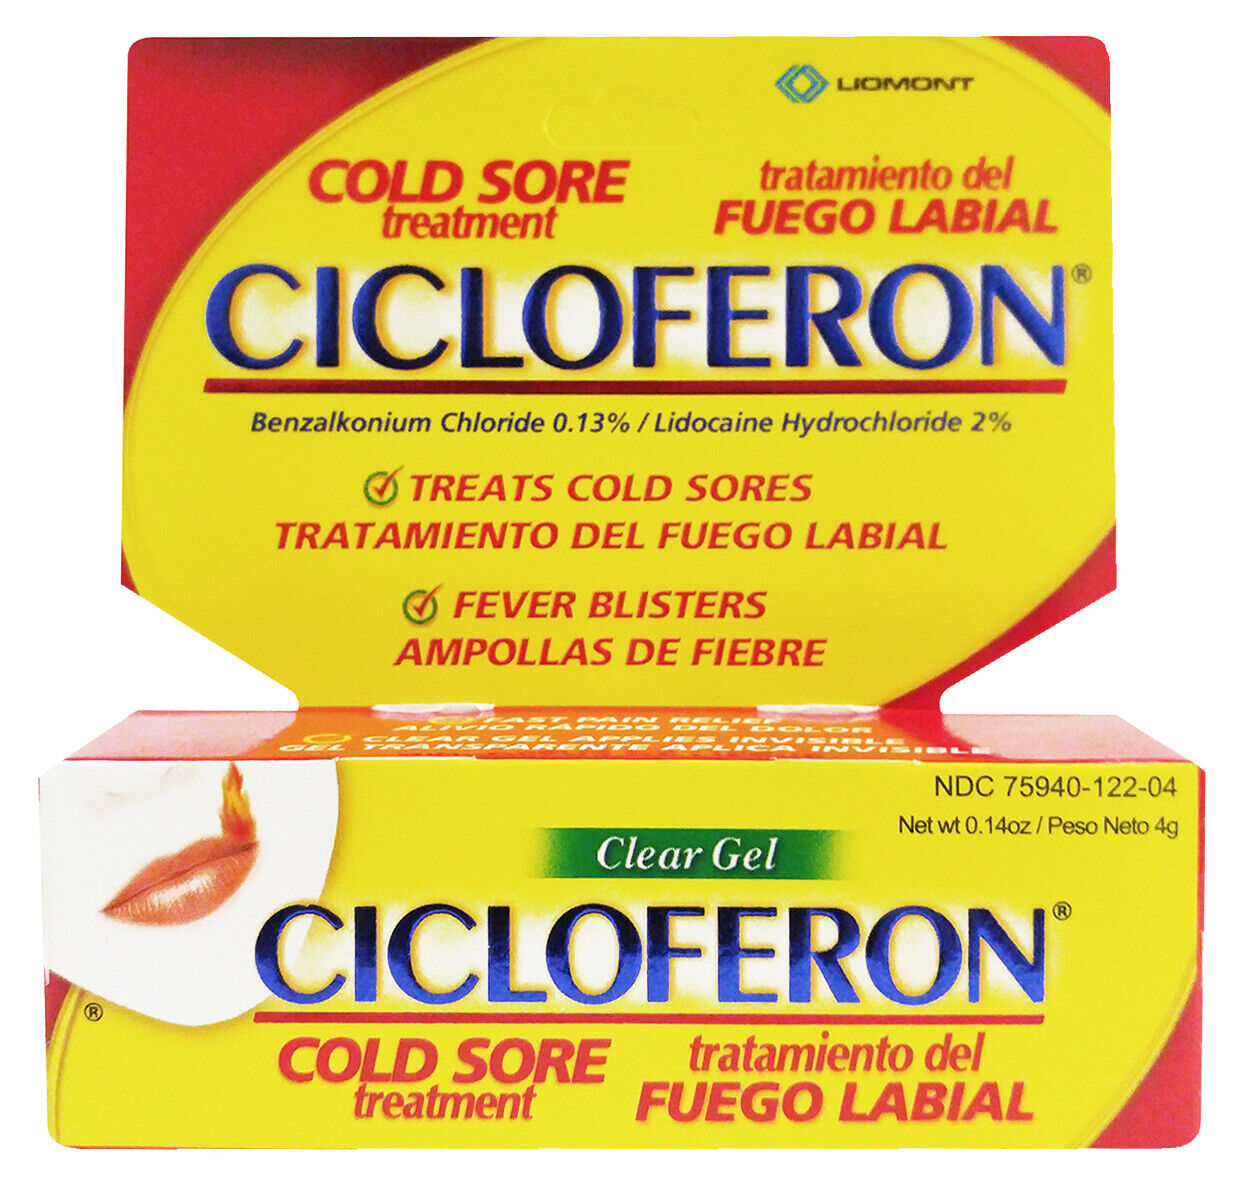 Cicloferon Cold Sore Treatment / Tratamiento para Fuego Labial 2g, Exp Dec. 2021